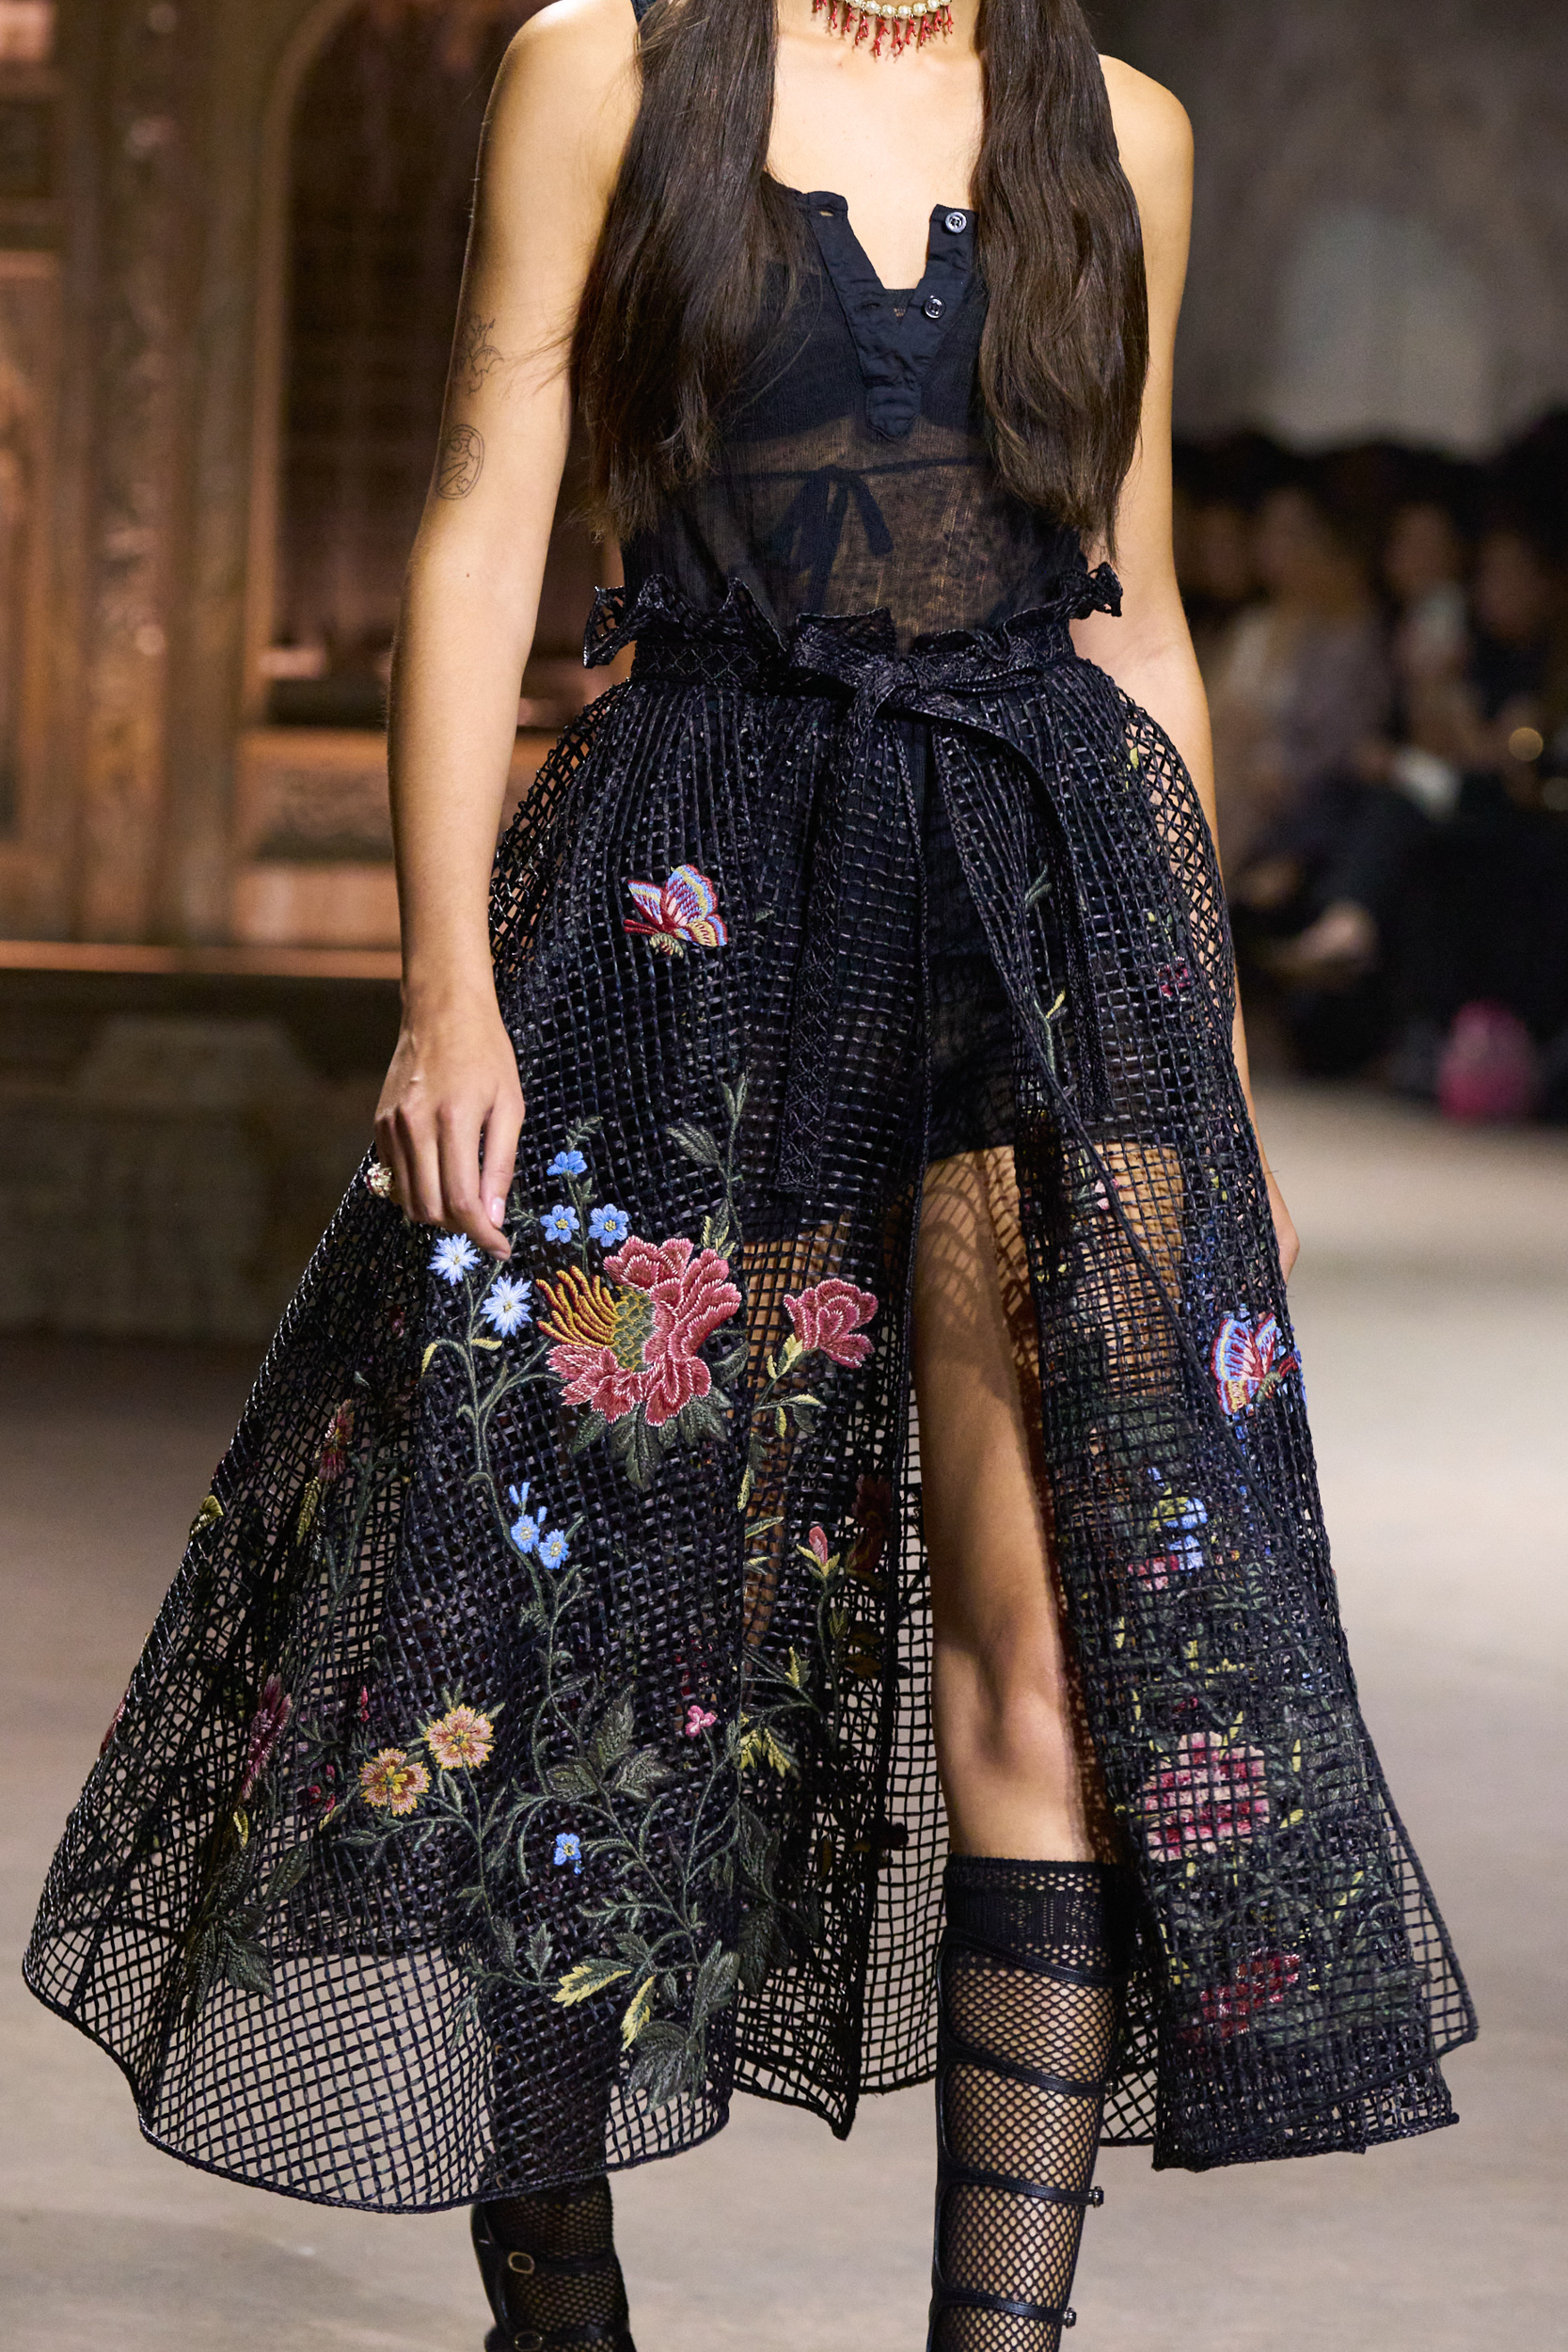 Christian Dior Spring 2023 Fashion Show Details